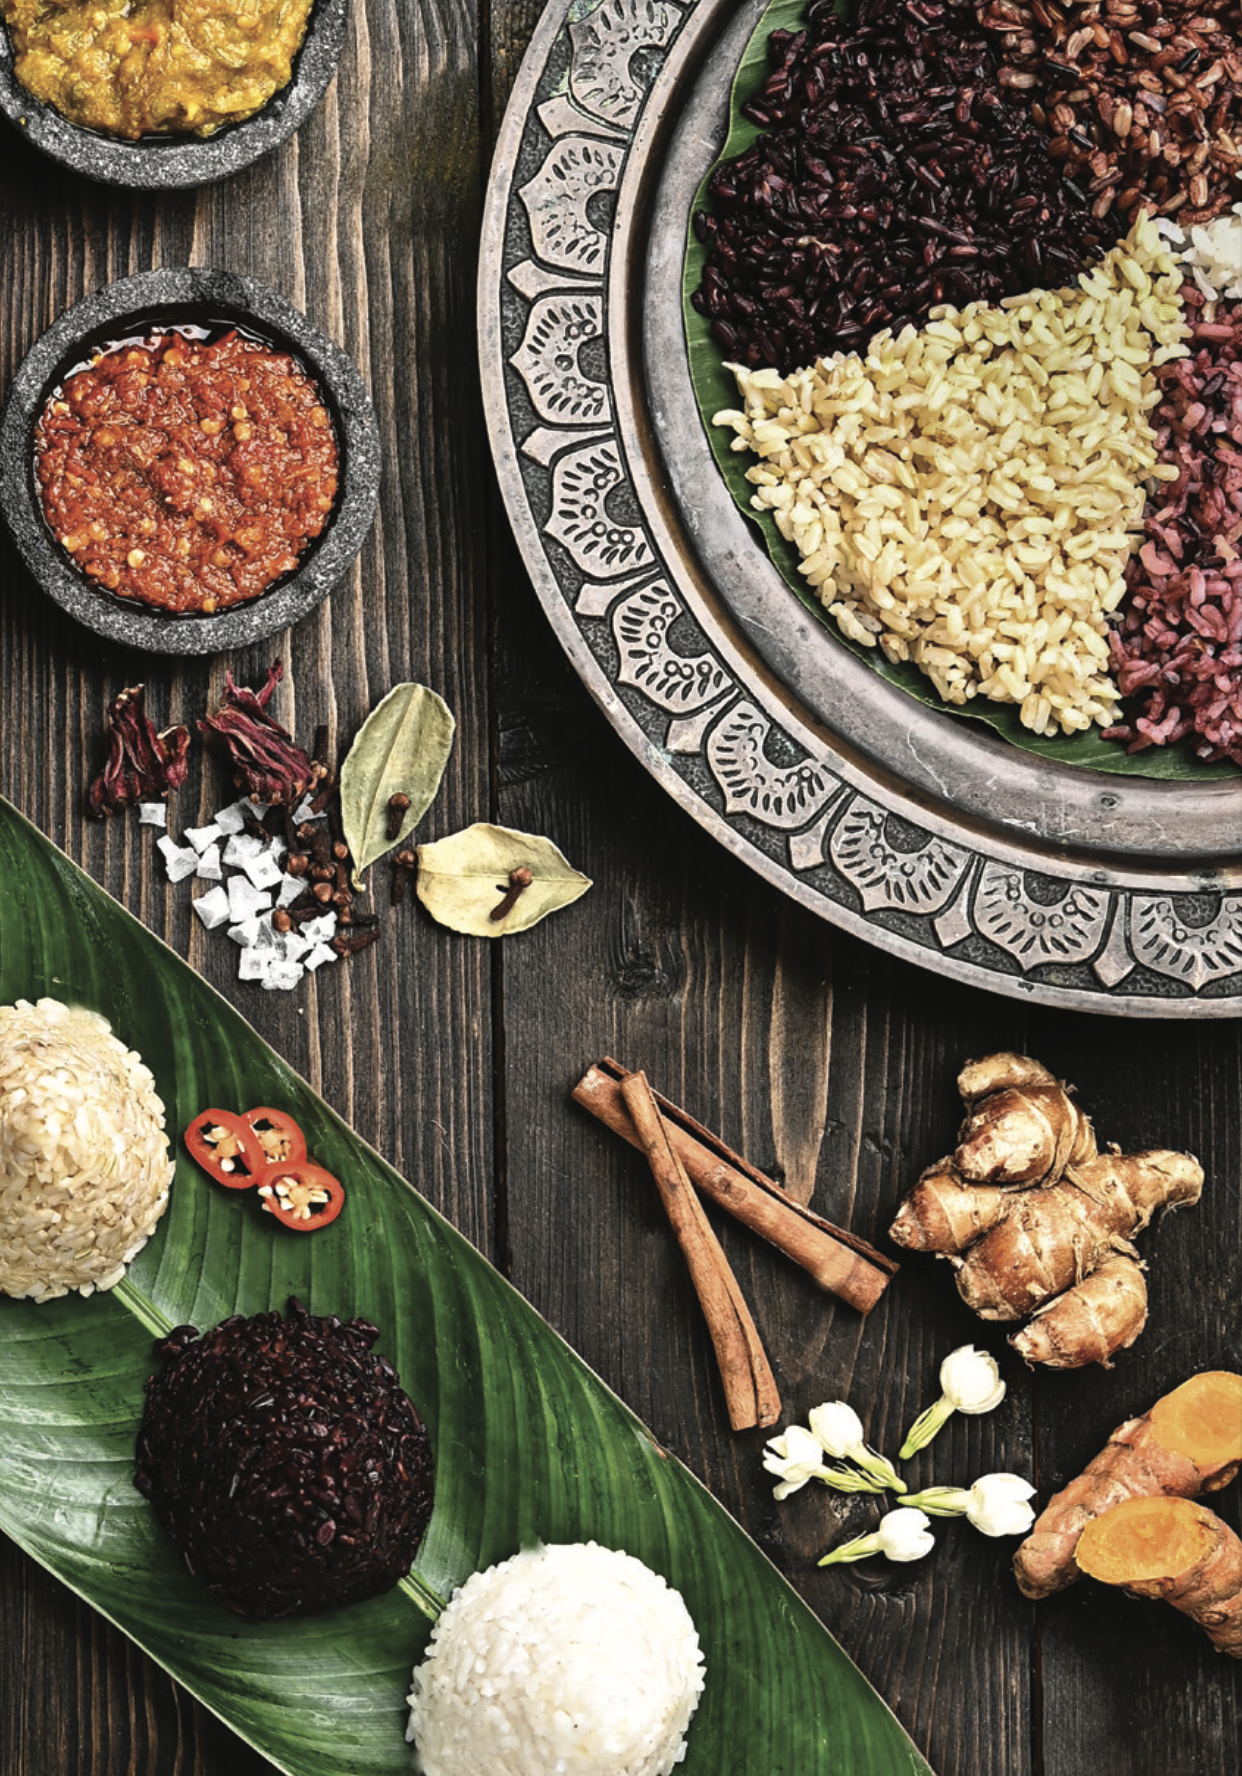 أطباق إندونيسية تشمل أنواعًا مختلفةً من الأرز والصلصات الملونة، تقدم على طاولة خشبية.